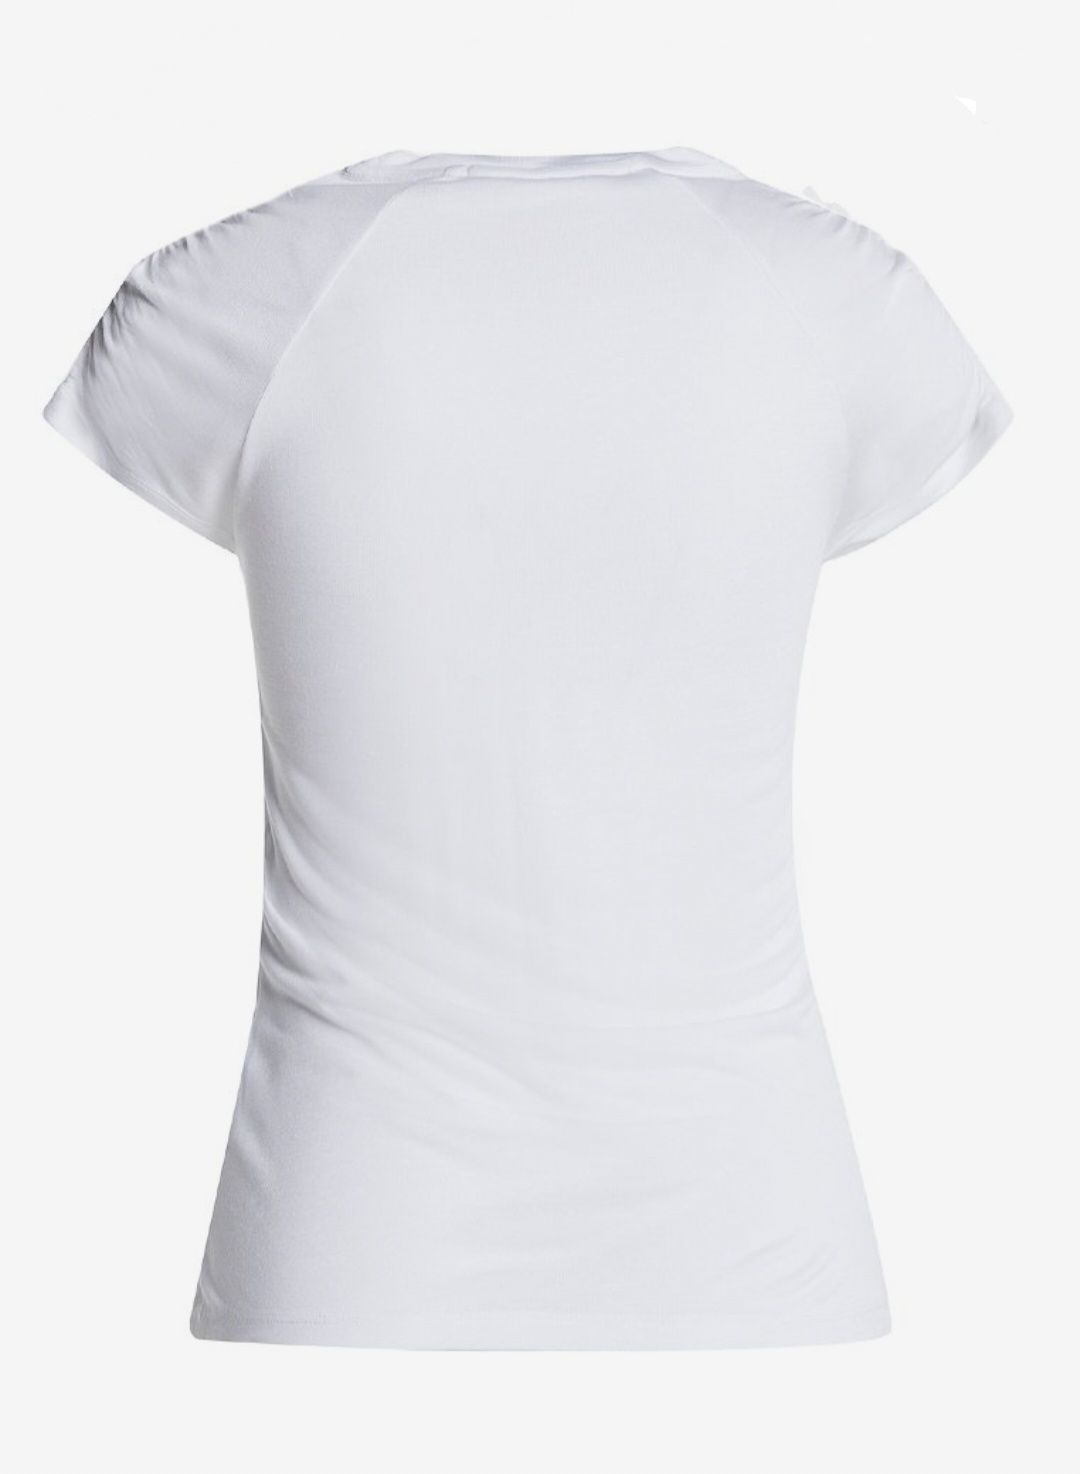 KARL LAGERFELD nowy biały t-shirt r. M